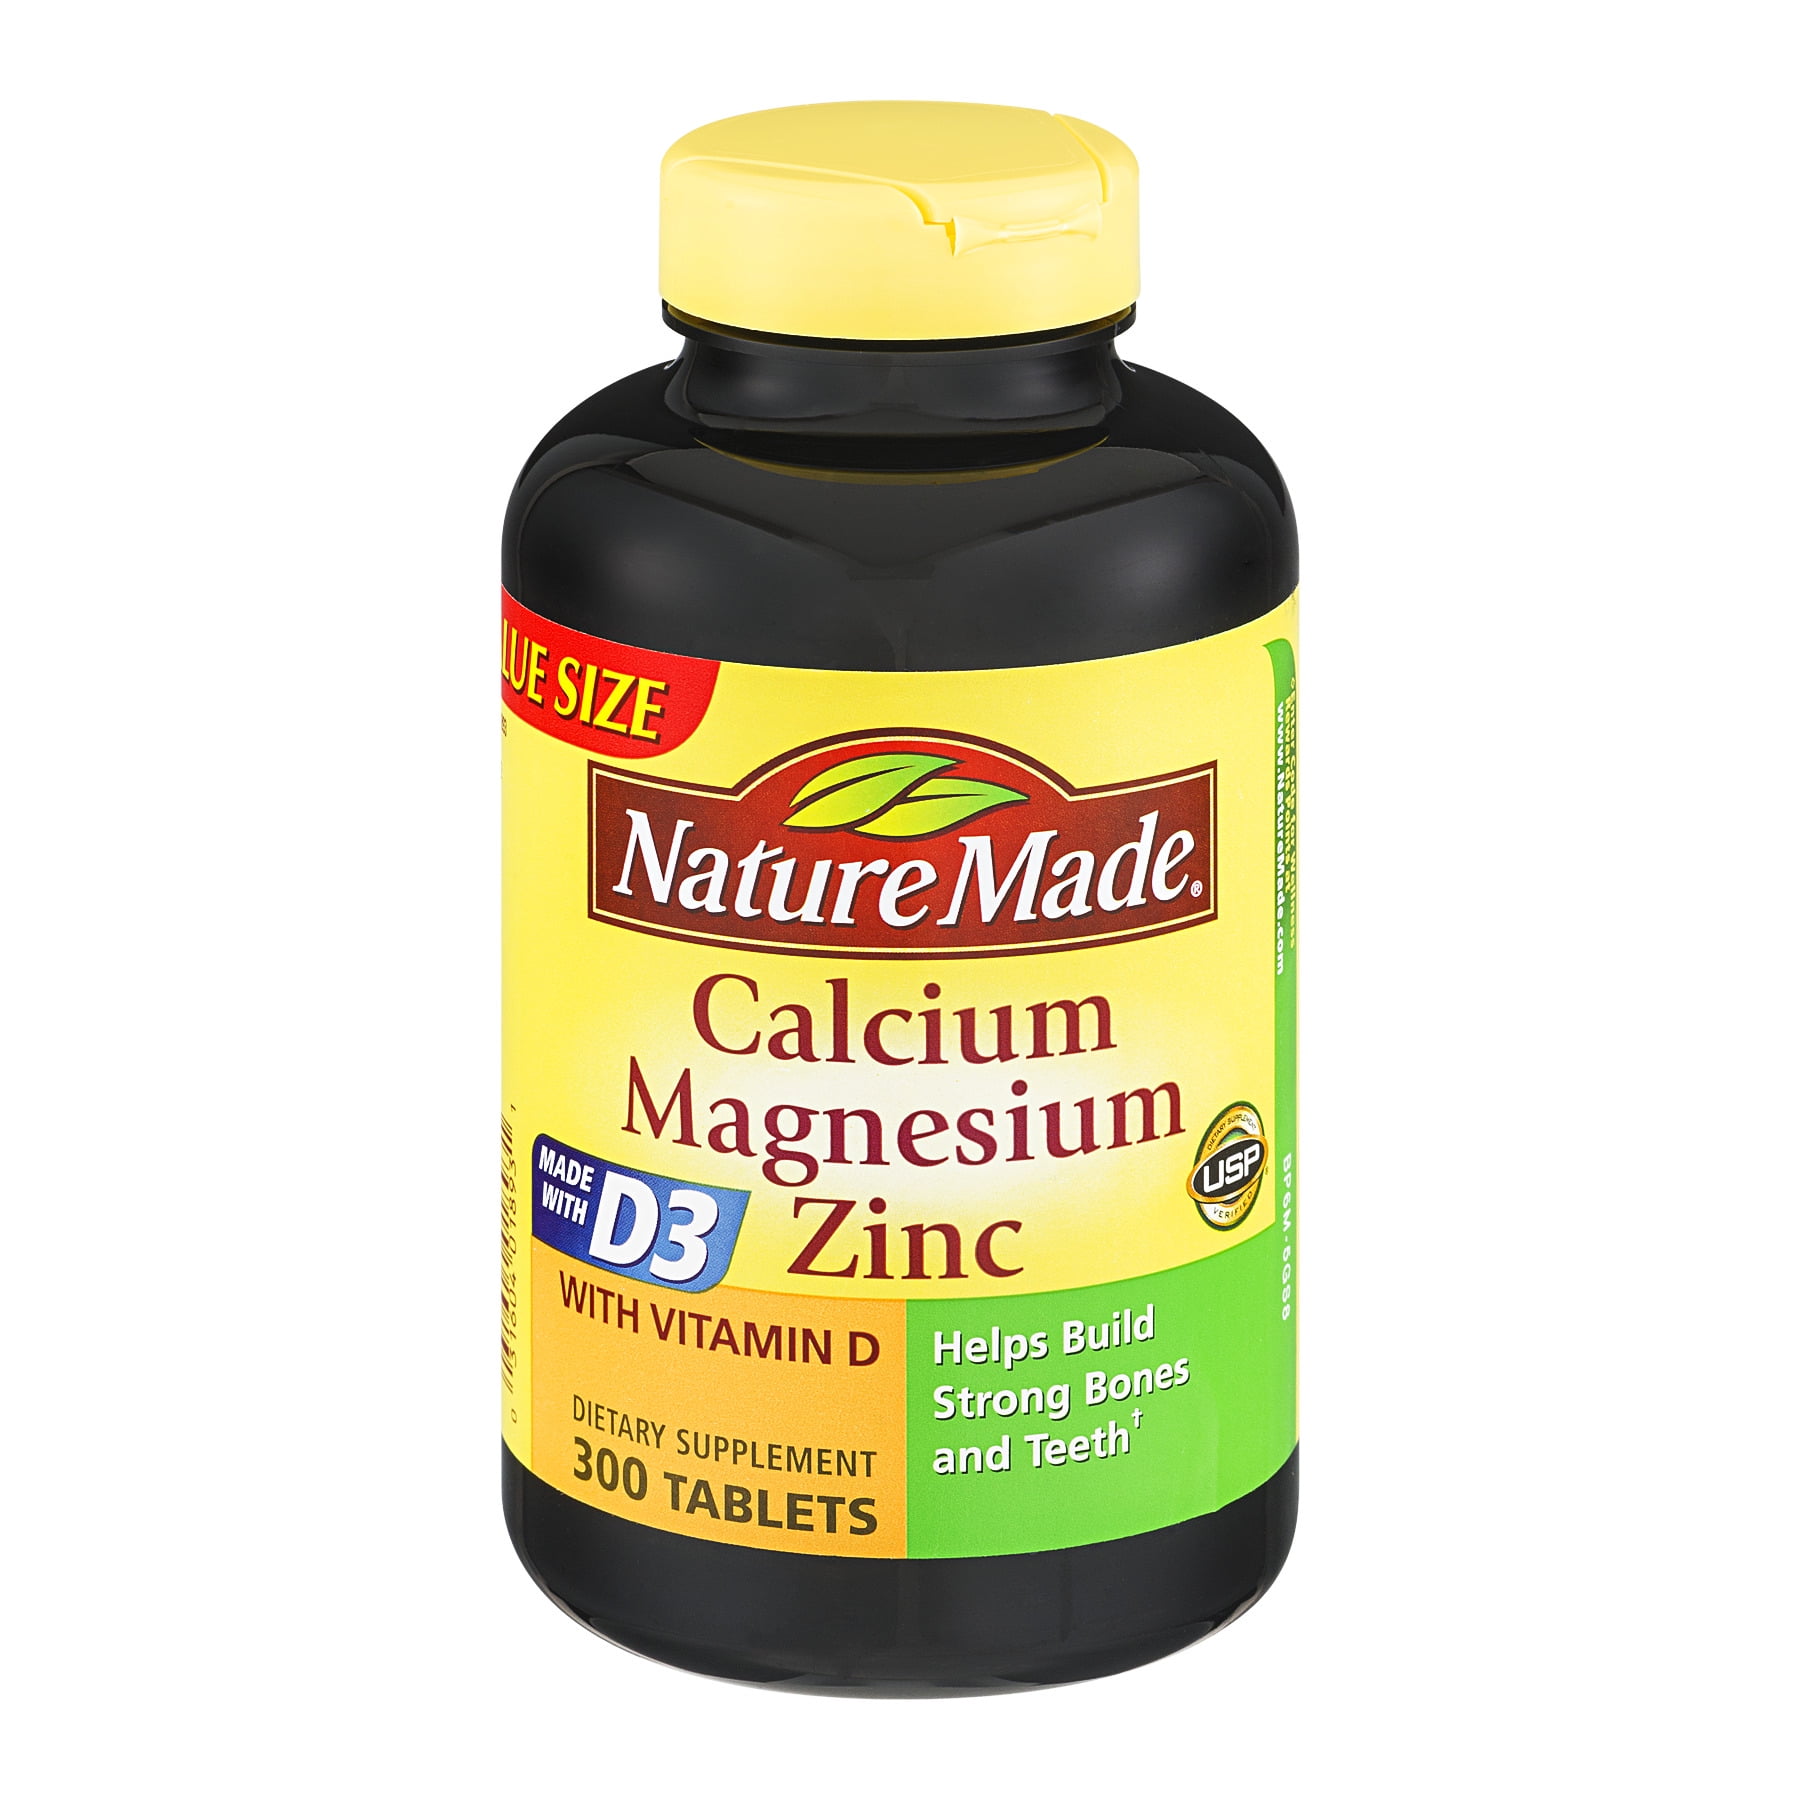 Zinc vitamin d3. Calcium Magnesium Zinc with Vitamin d3 комплекс. Nature made Calcium Magnesium Zinc. Calcium Vitamin d3 , Magnesium &Zinc Tablets corshel -d Tablet Австралия. Цинк витамины.